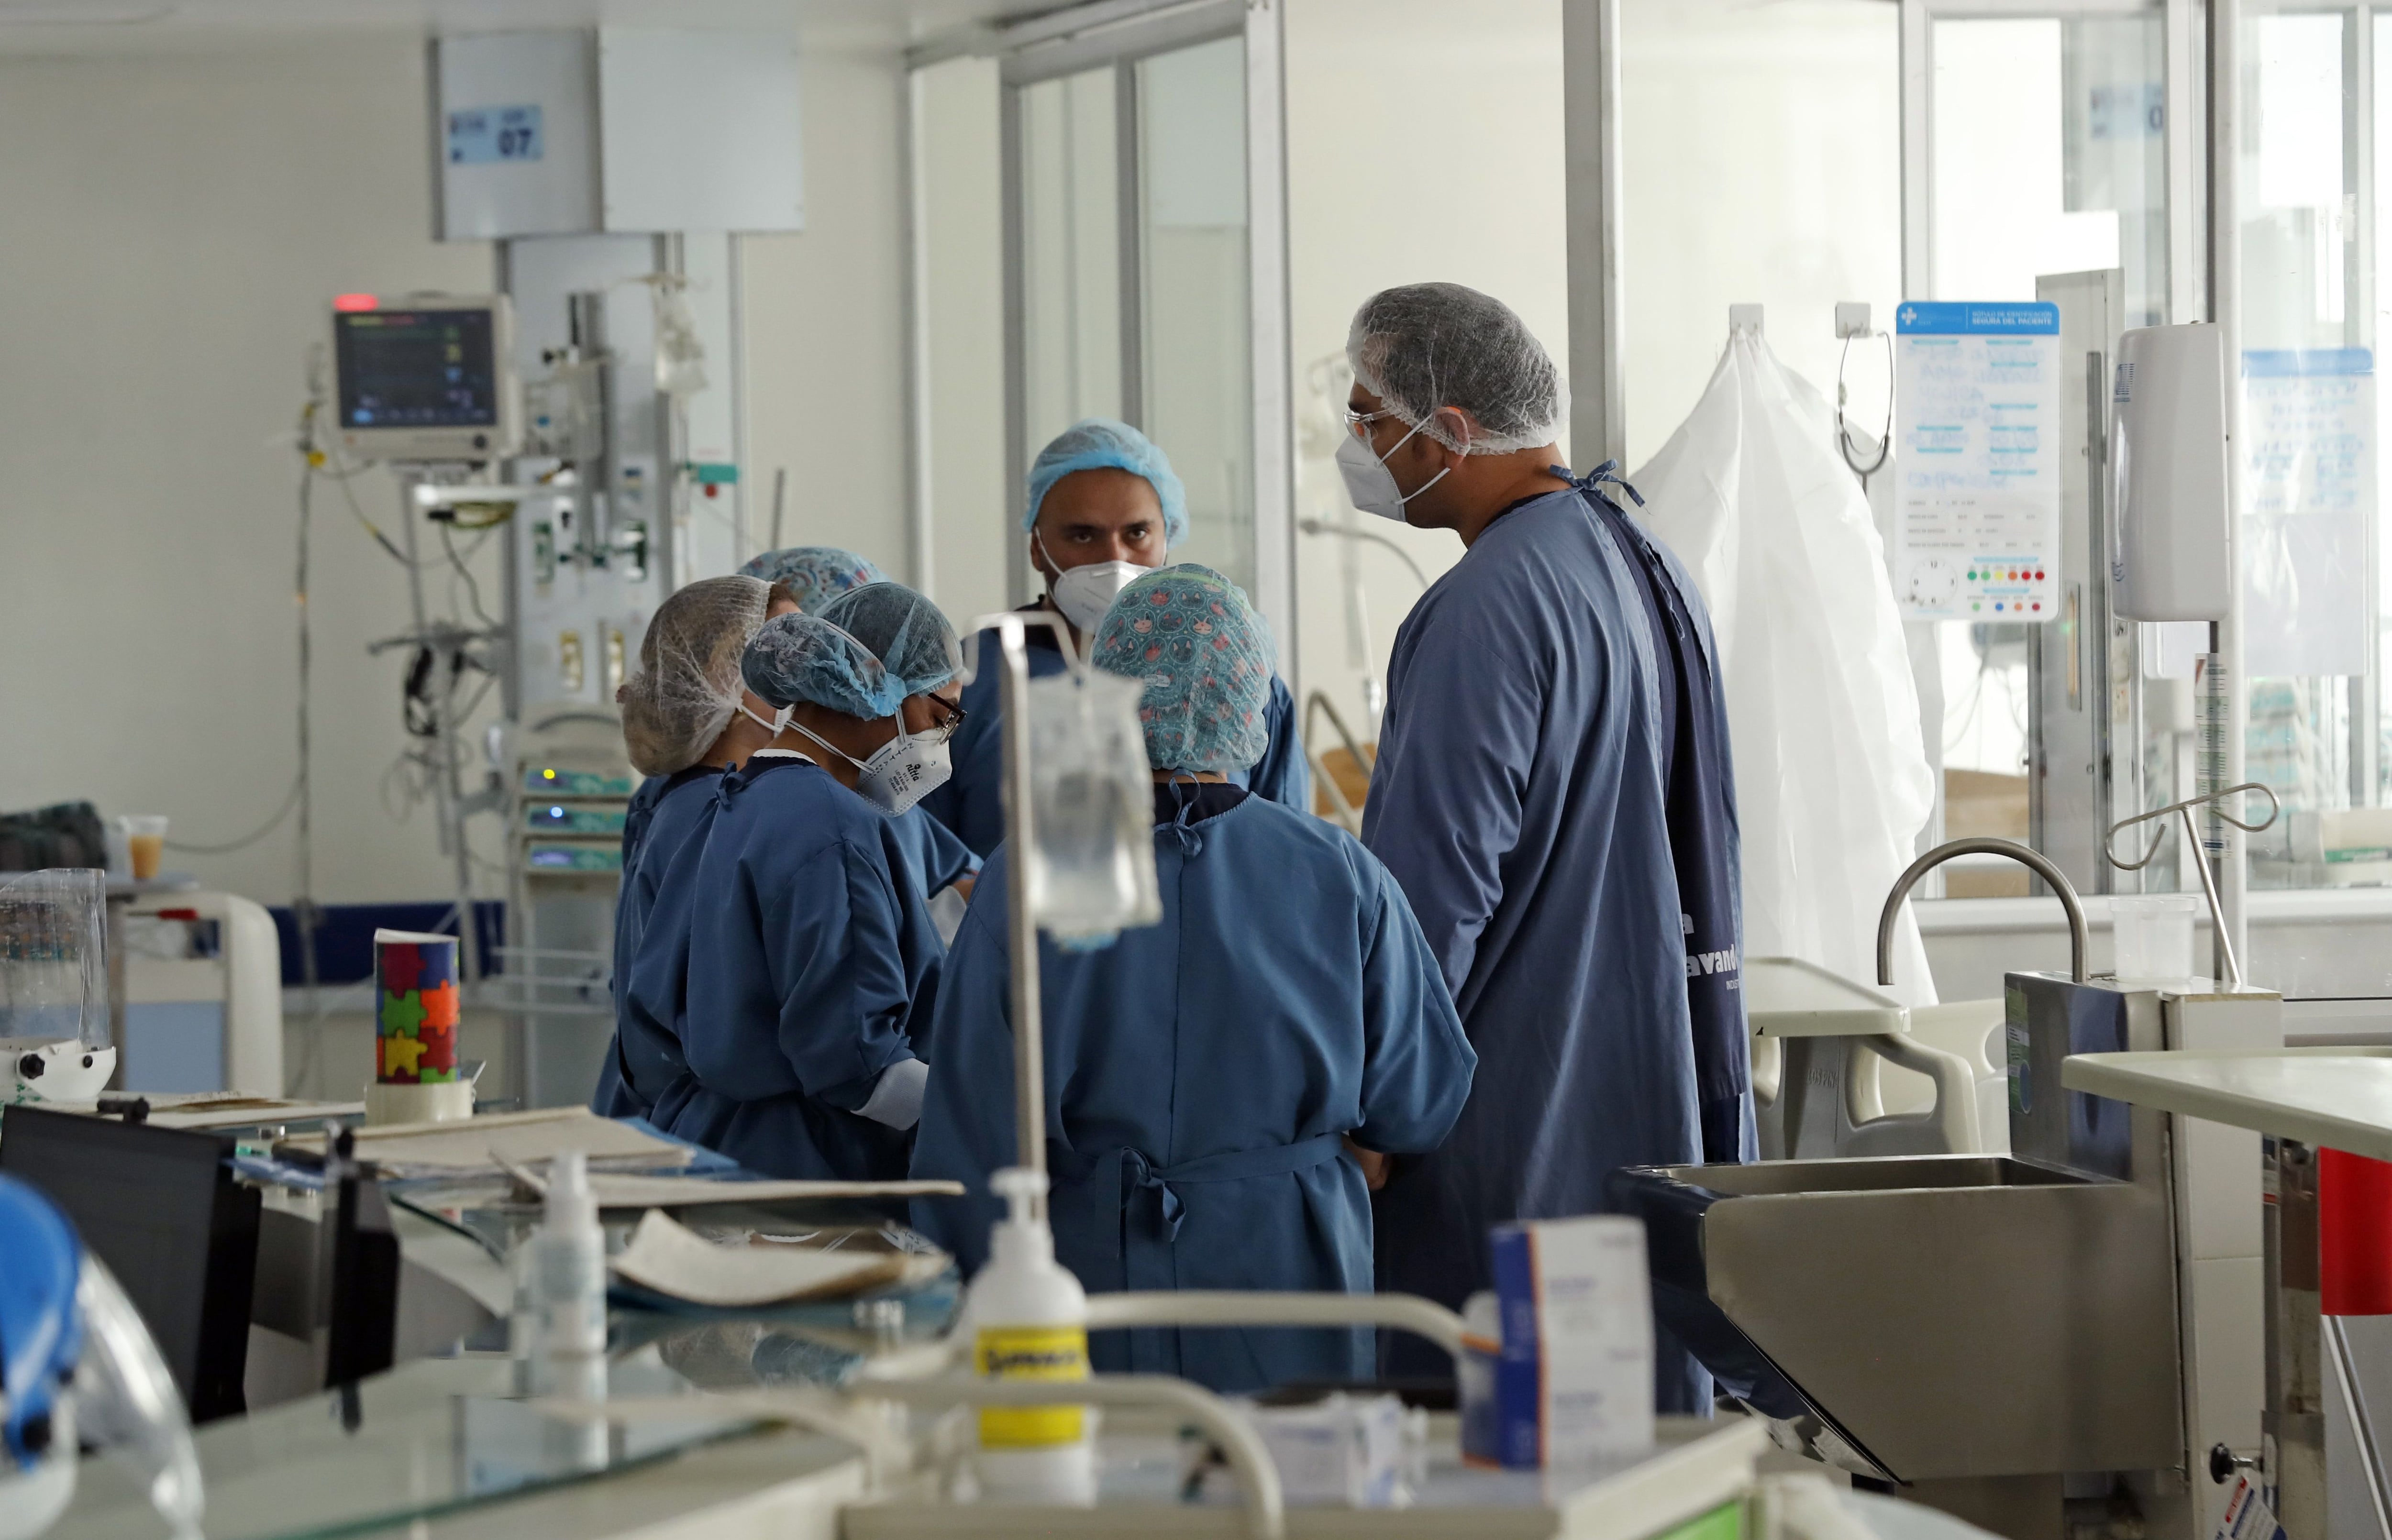 Los profesionales de la salud le hicieron siete cirugías de reconstrucción al joven Santiago Arrieta - crédito Mauricio Dueñas Castañeda/EFE